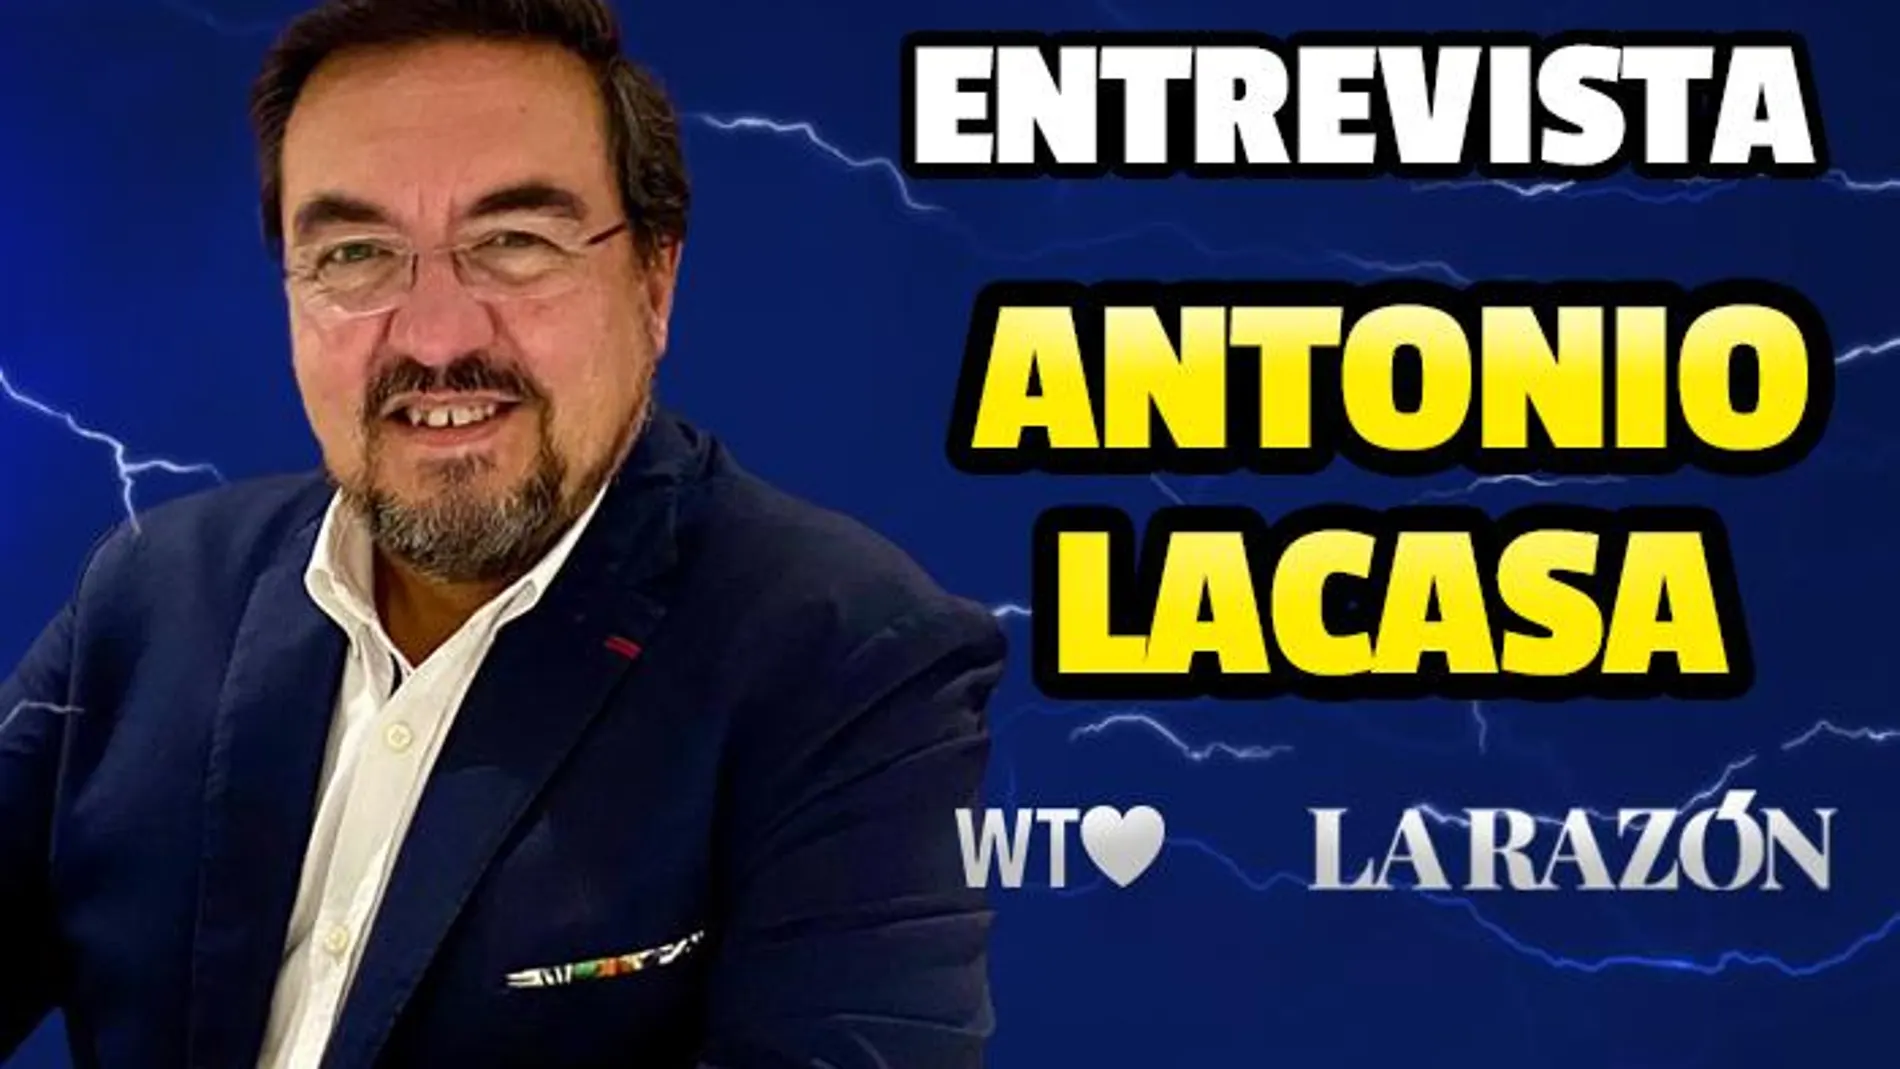 Antonio Lacasa